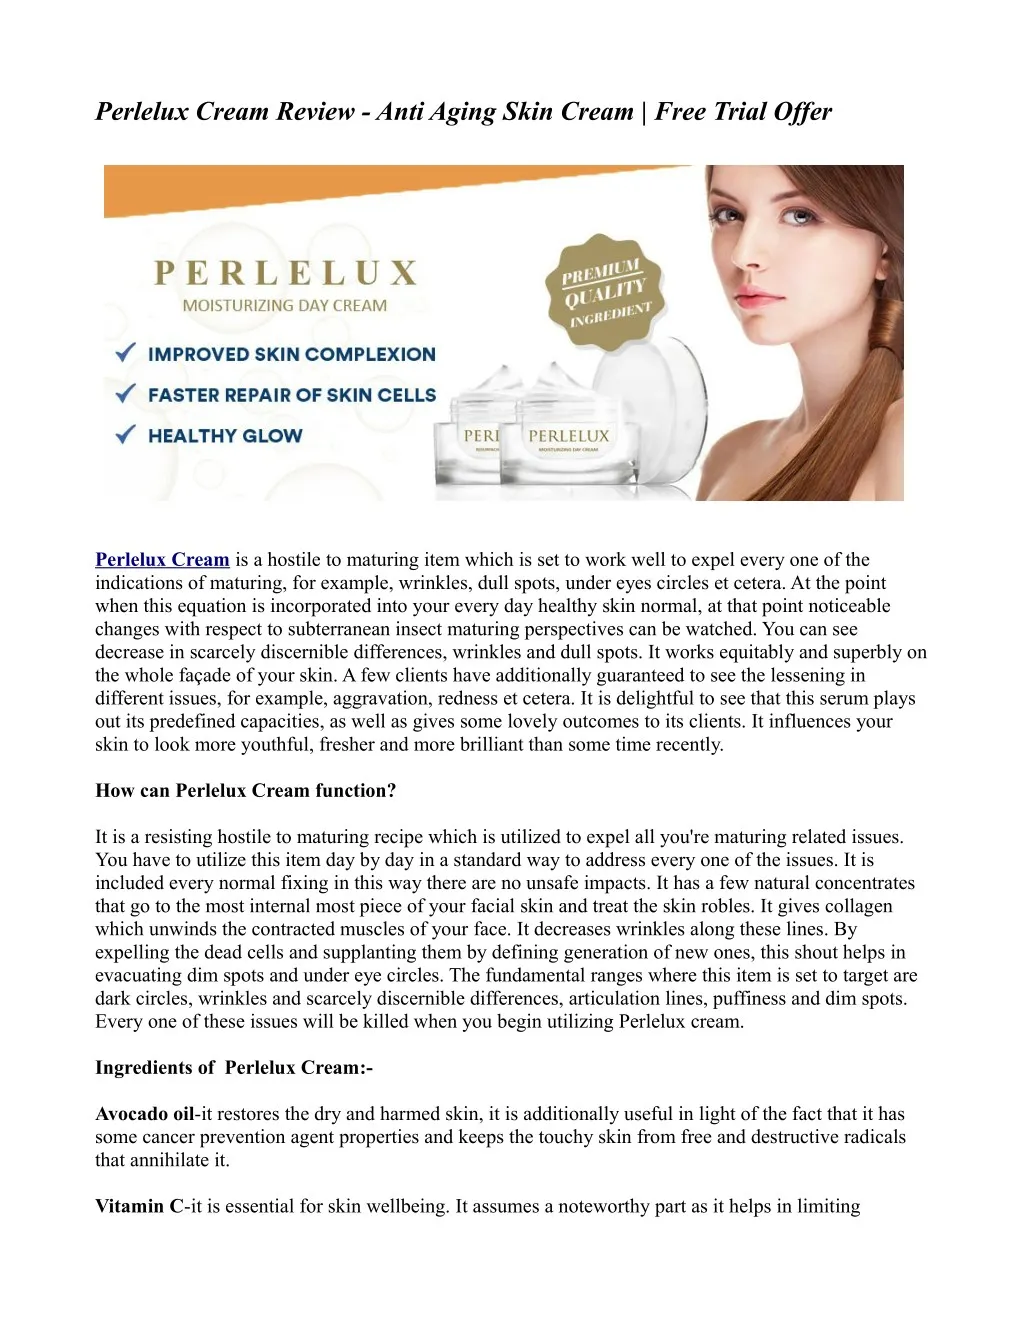 perlelux cream review anti aging skin cream free